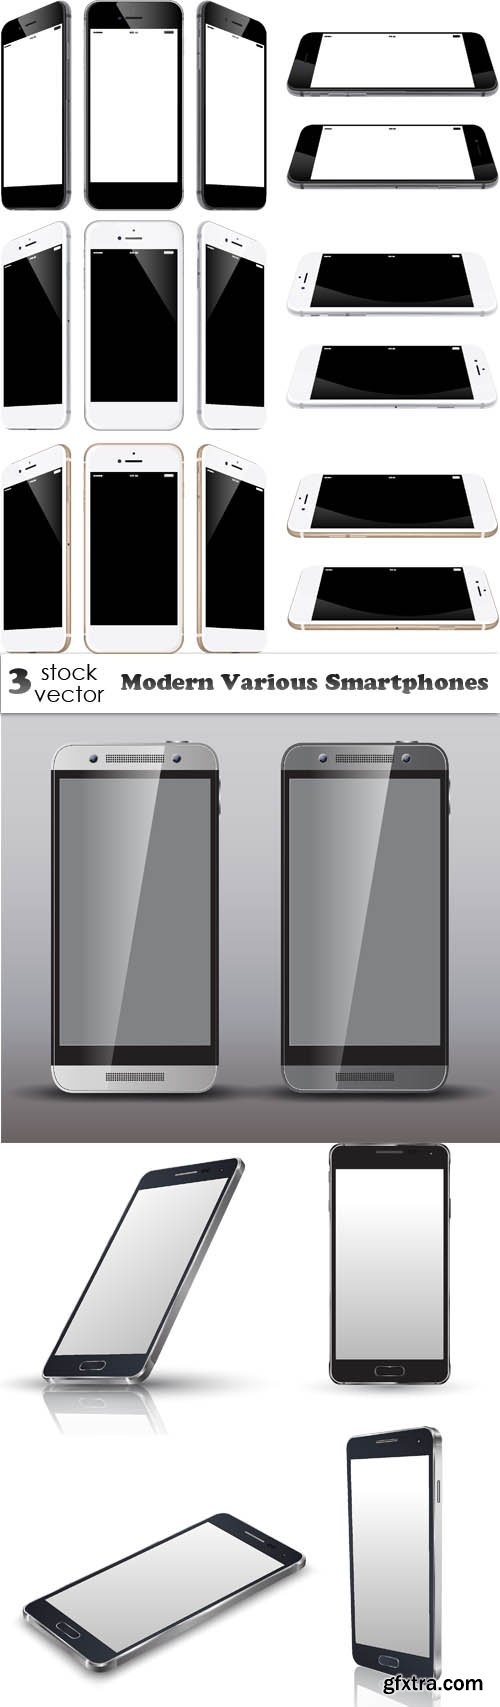 Vectors - Modern Various Smartphones